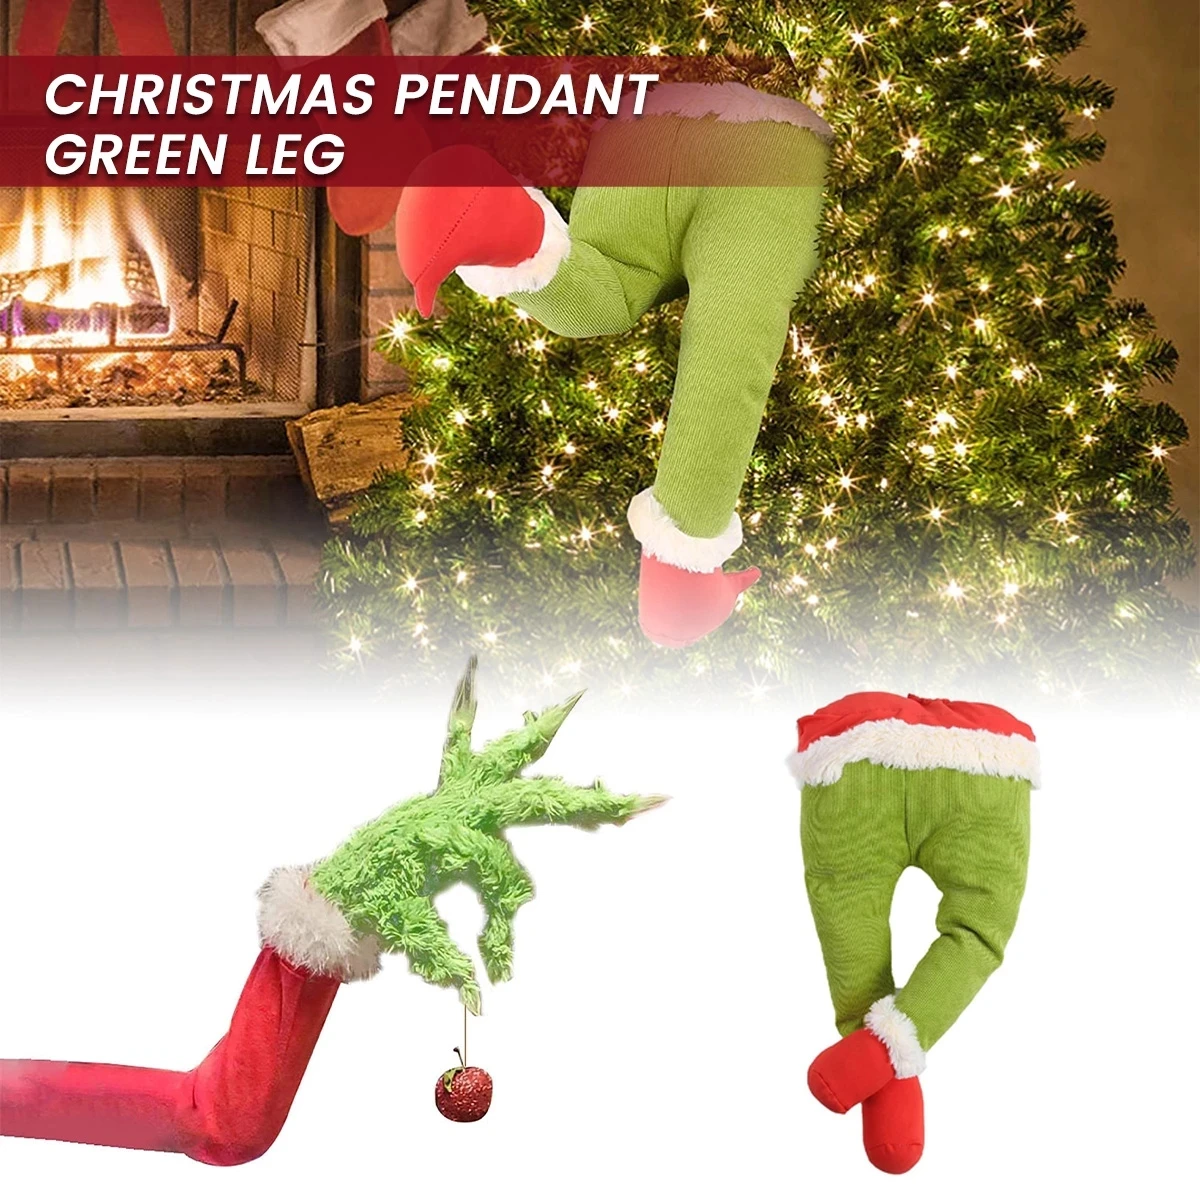 Brazo Soporte de Adorno de Brazo de Grinch Verde Peludo para Fiesta de Navidad en casa Adorno de Brazo y Cabeza Verde para el árbol de Navidad